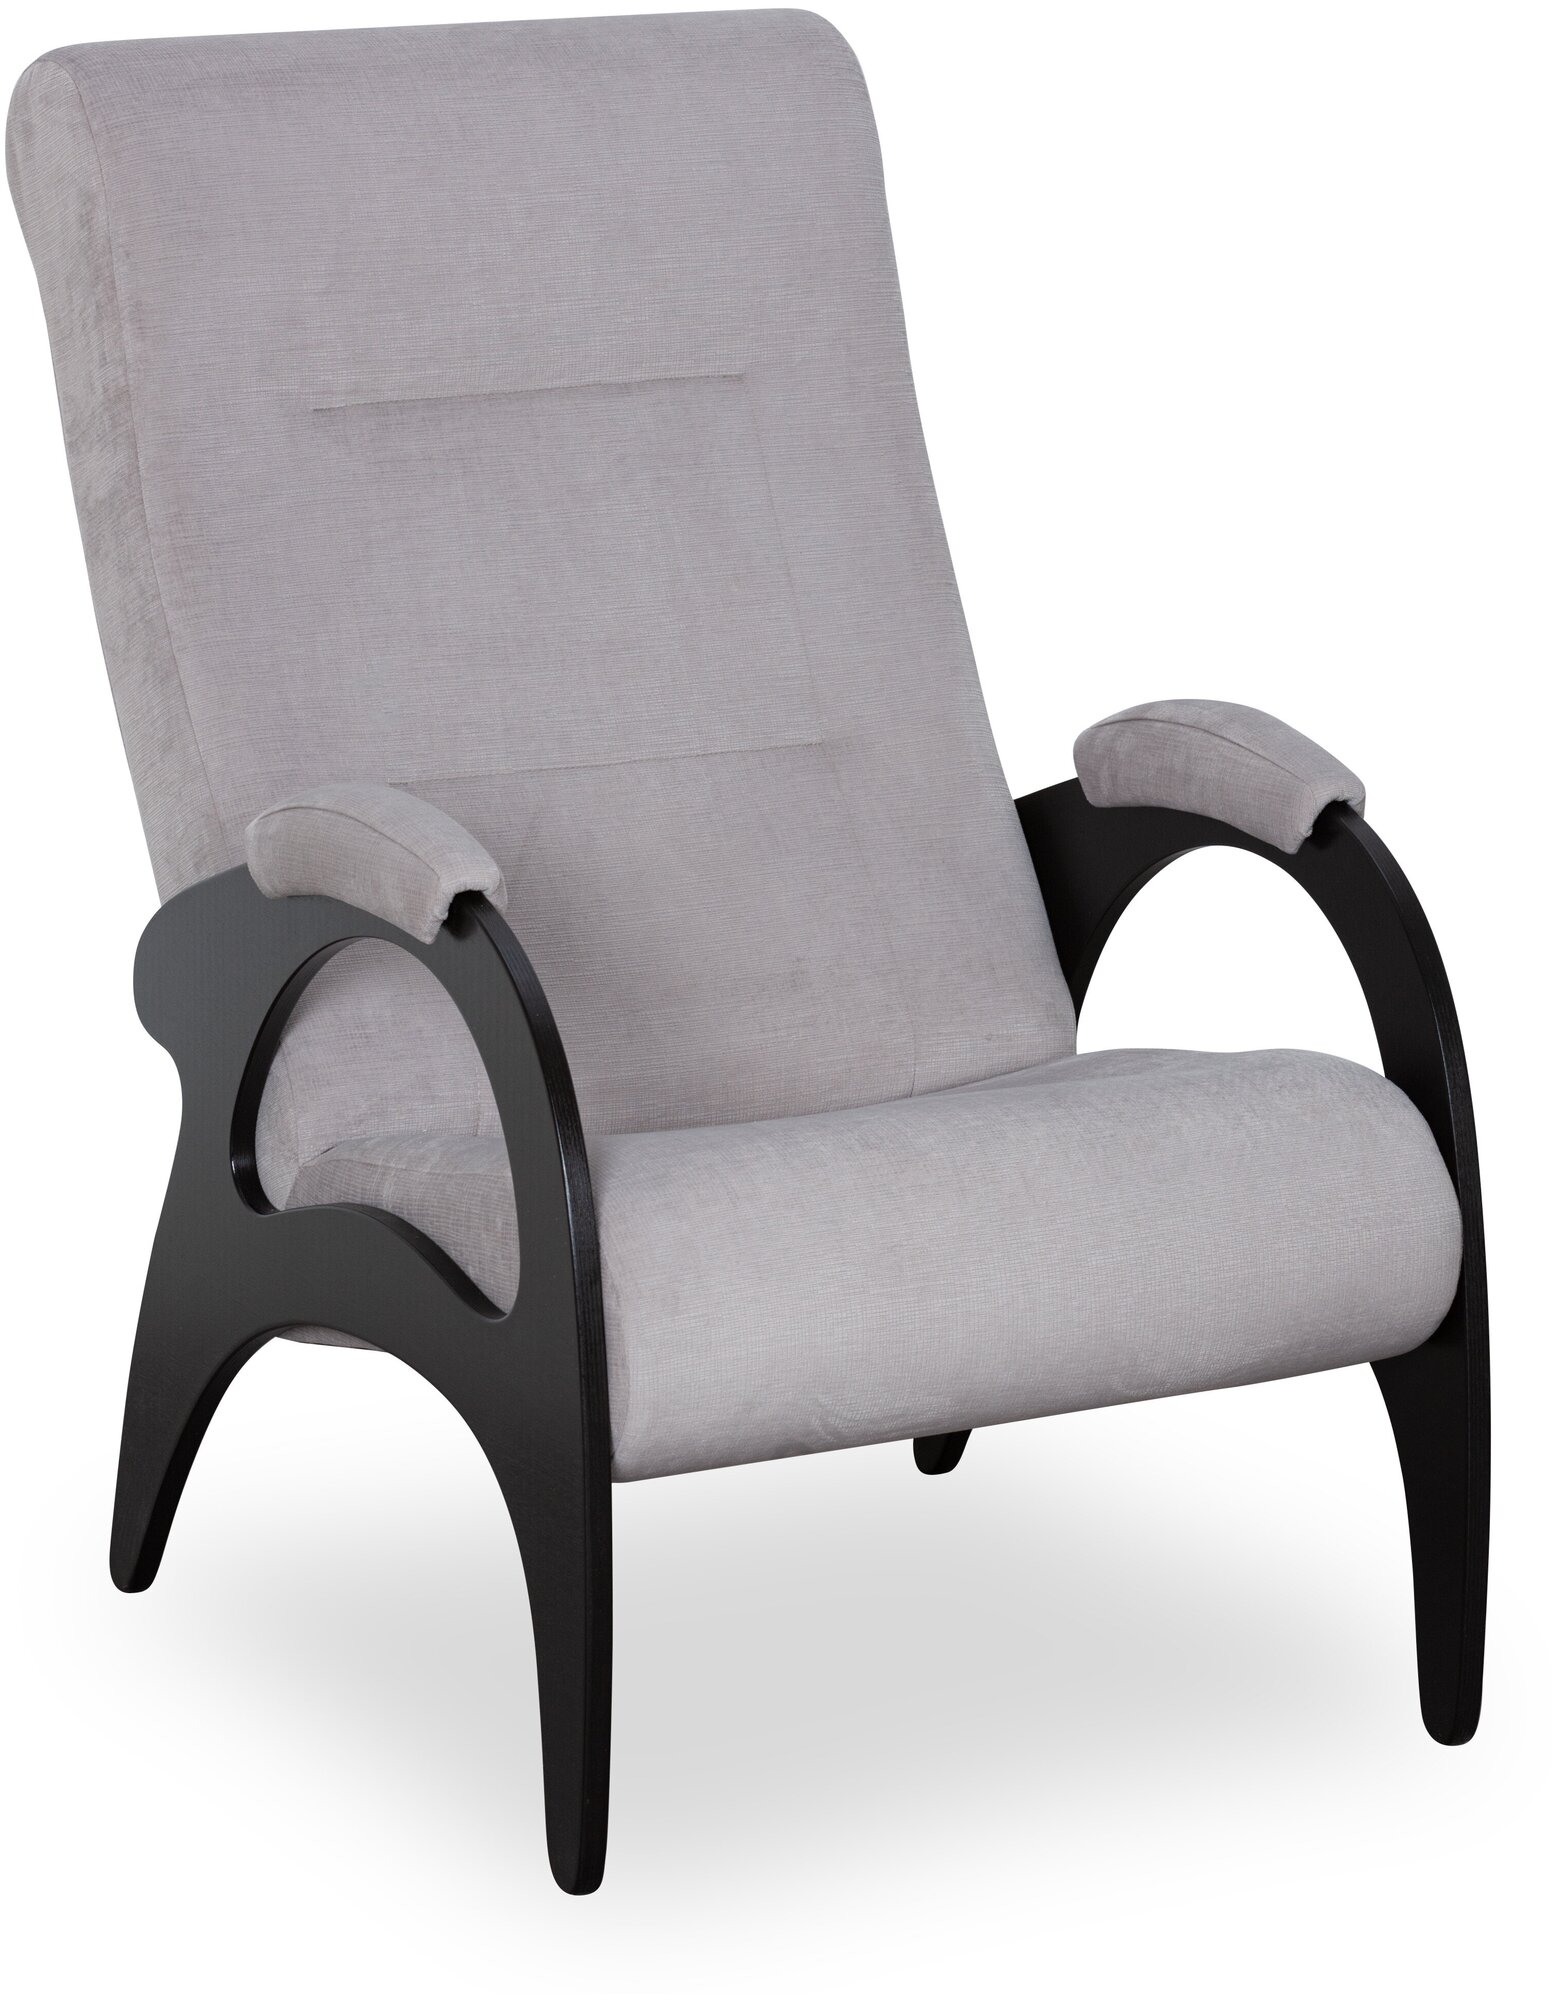 Кресло для дома кресло для отдыха Соната Кресло тканевое кресло для дома кресло садовое кресло для дачи велюр Dove